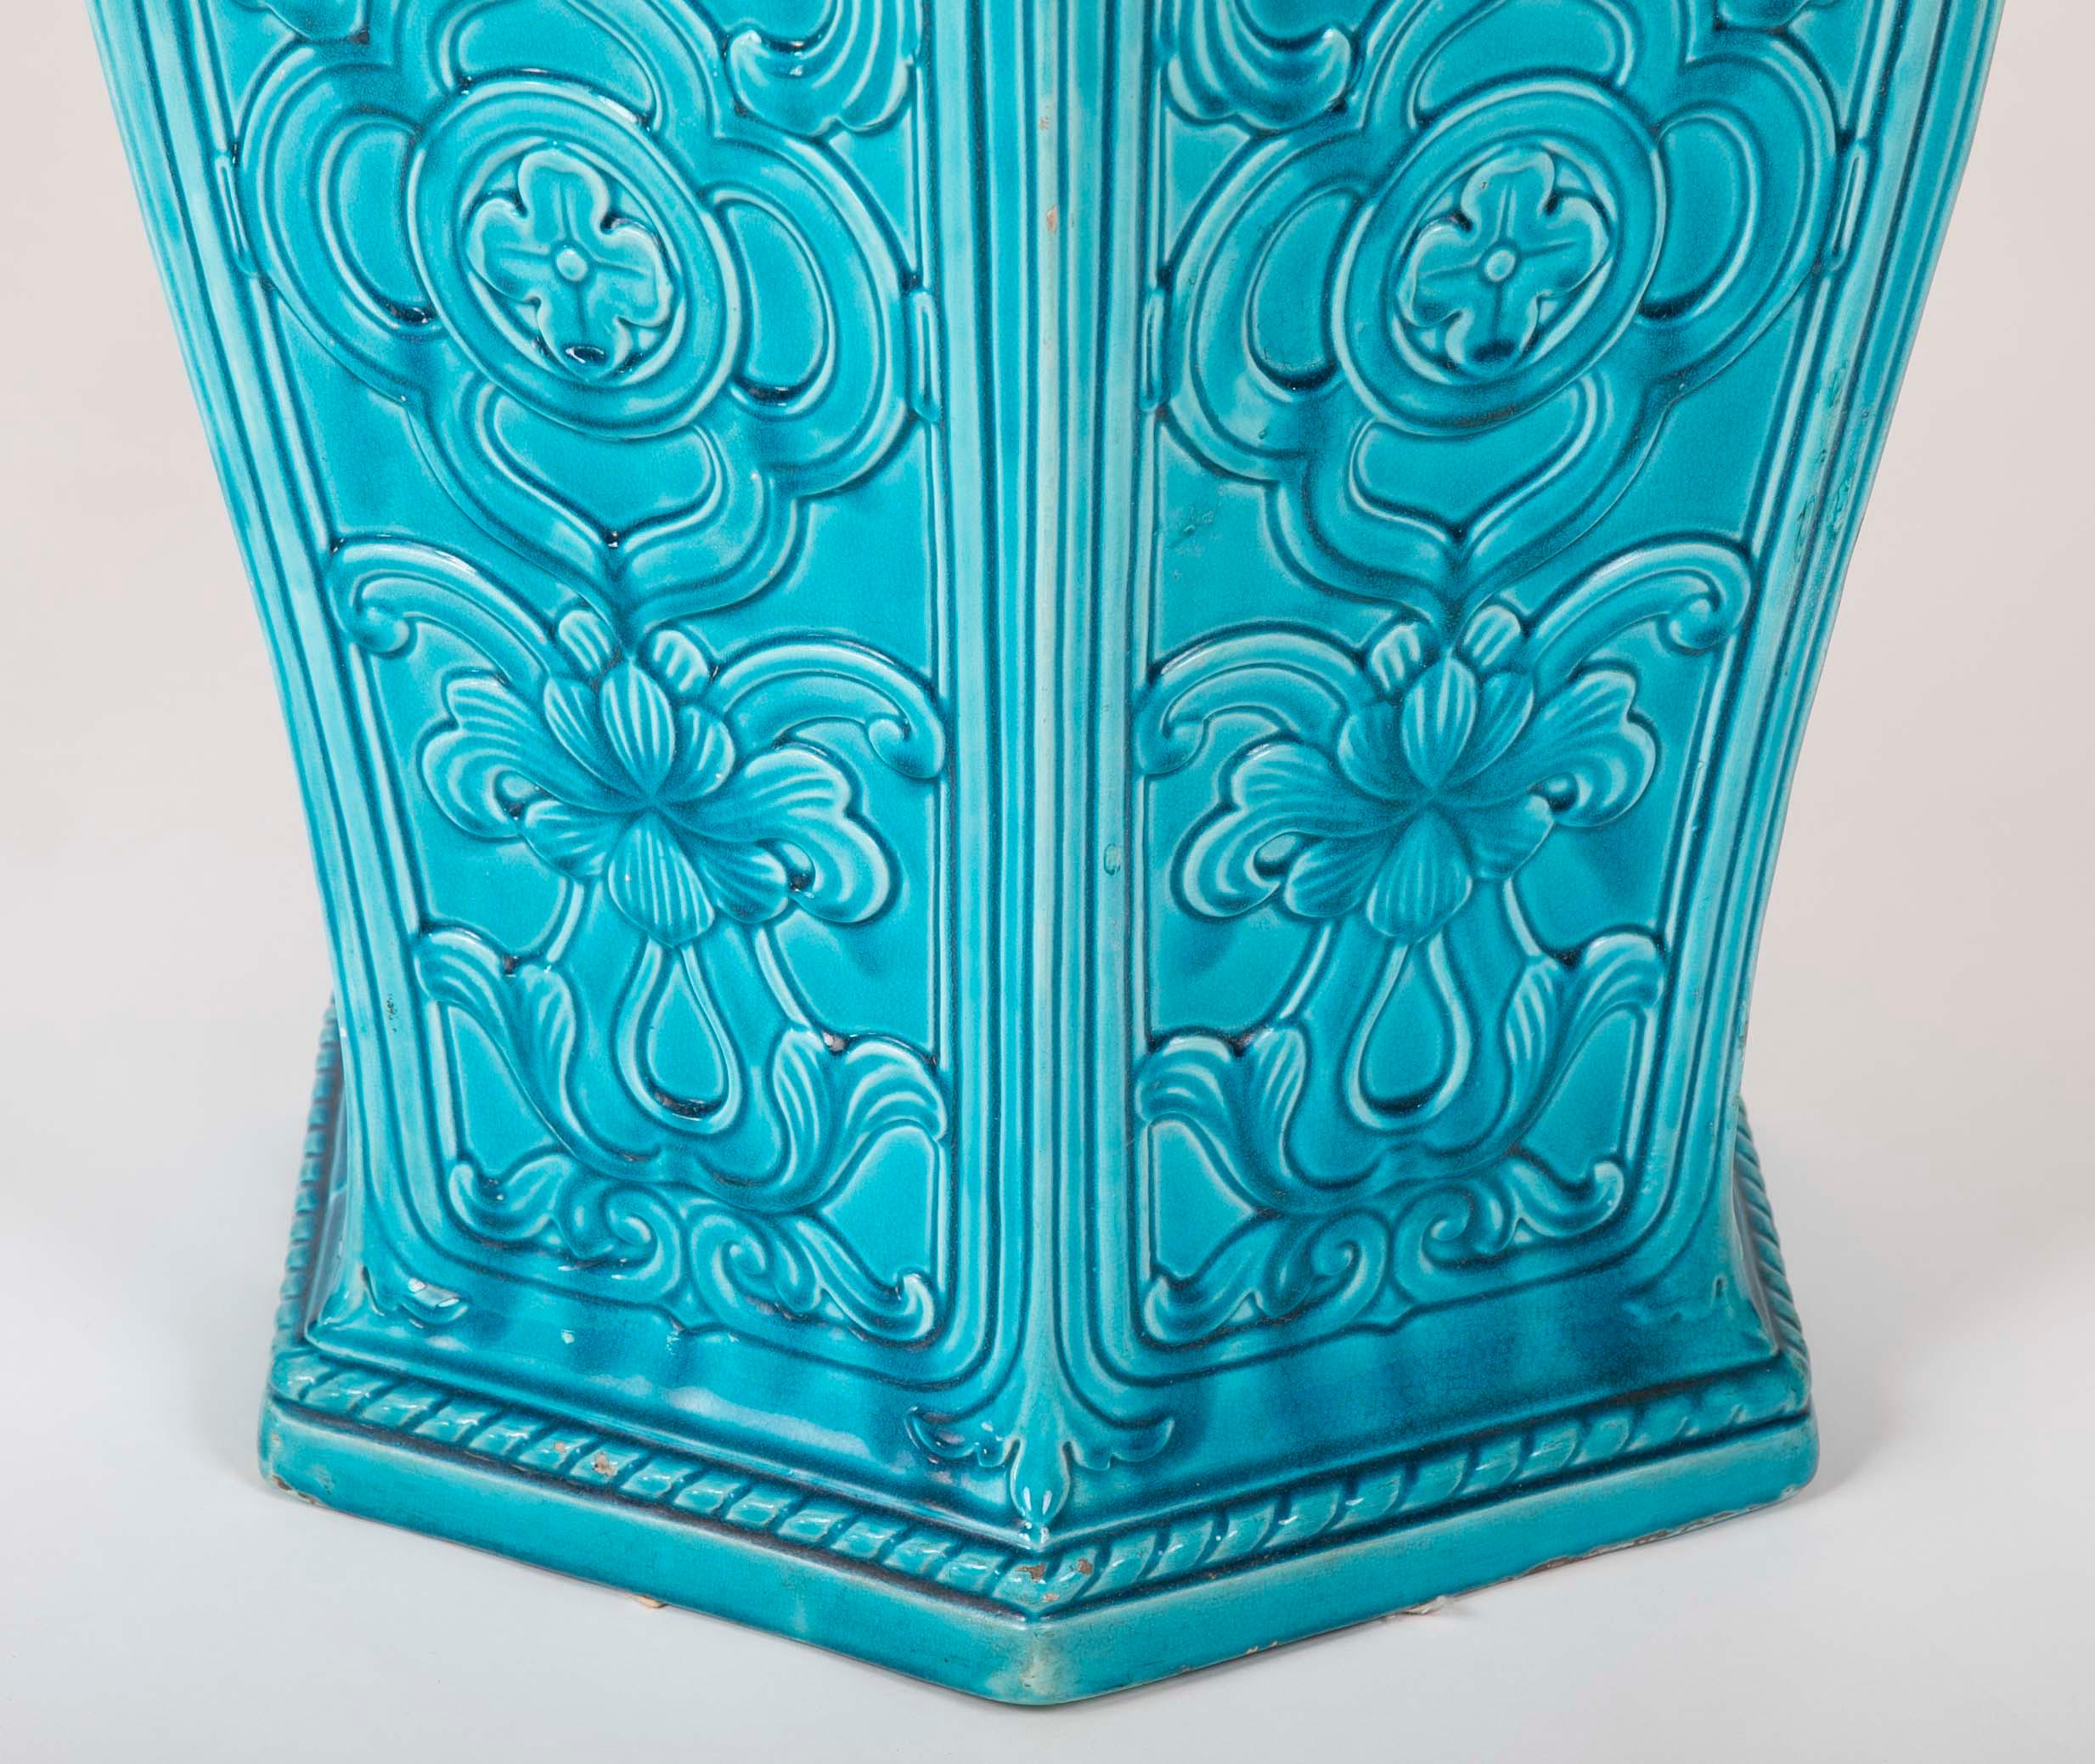 Sechseckige englische Majolika-Gartenstühle mit türkisfarbenem Grund (Keramik)